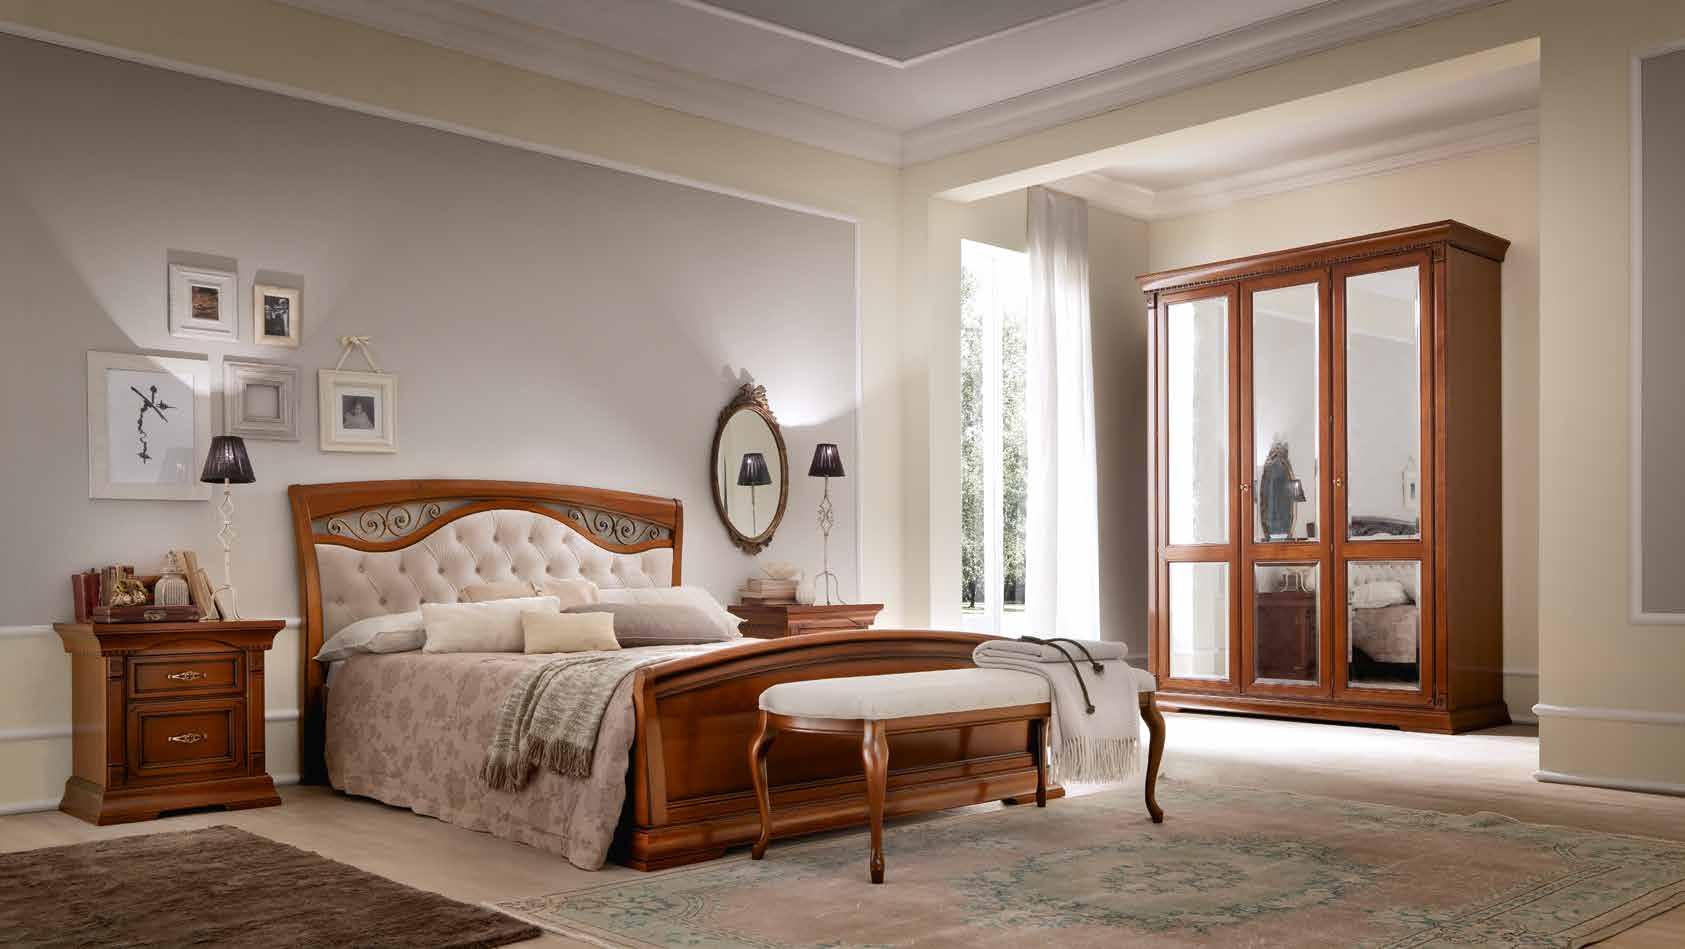 Кровать Prama Palazzo Ducale ciliegio, двуспальная, с мягким изголовьем, с ковкой, цвет: вишня, 160x200 см (71CI64LT)71CI64LT